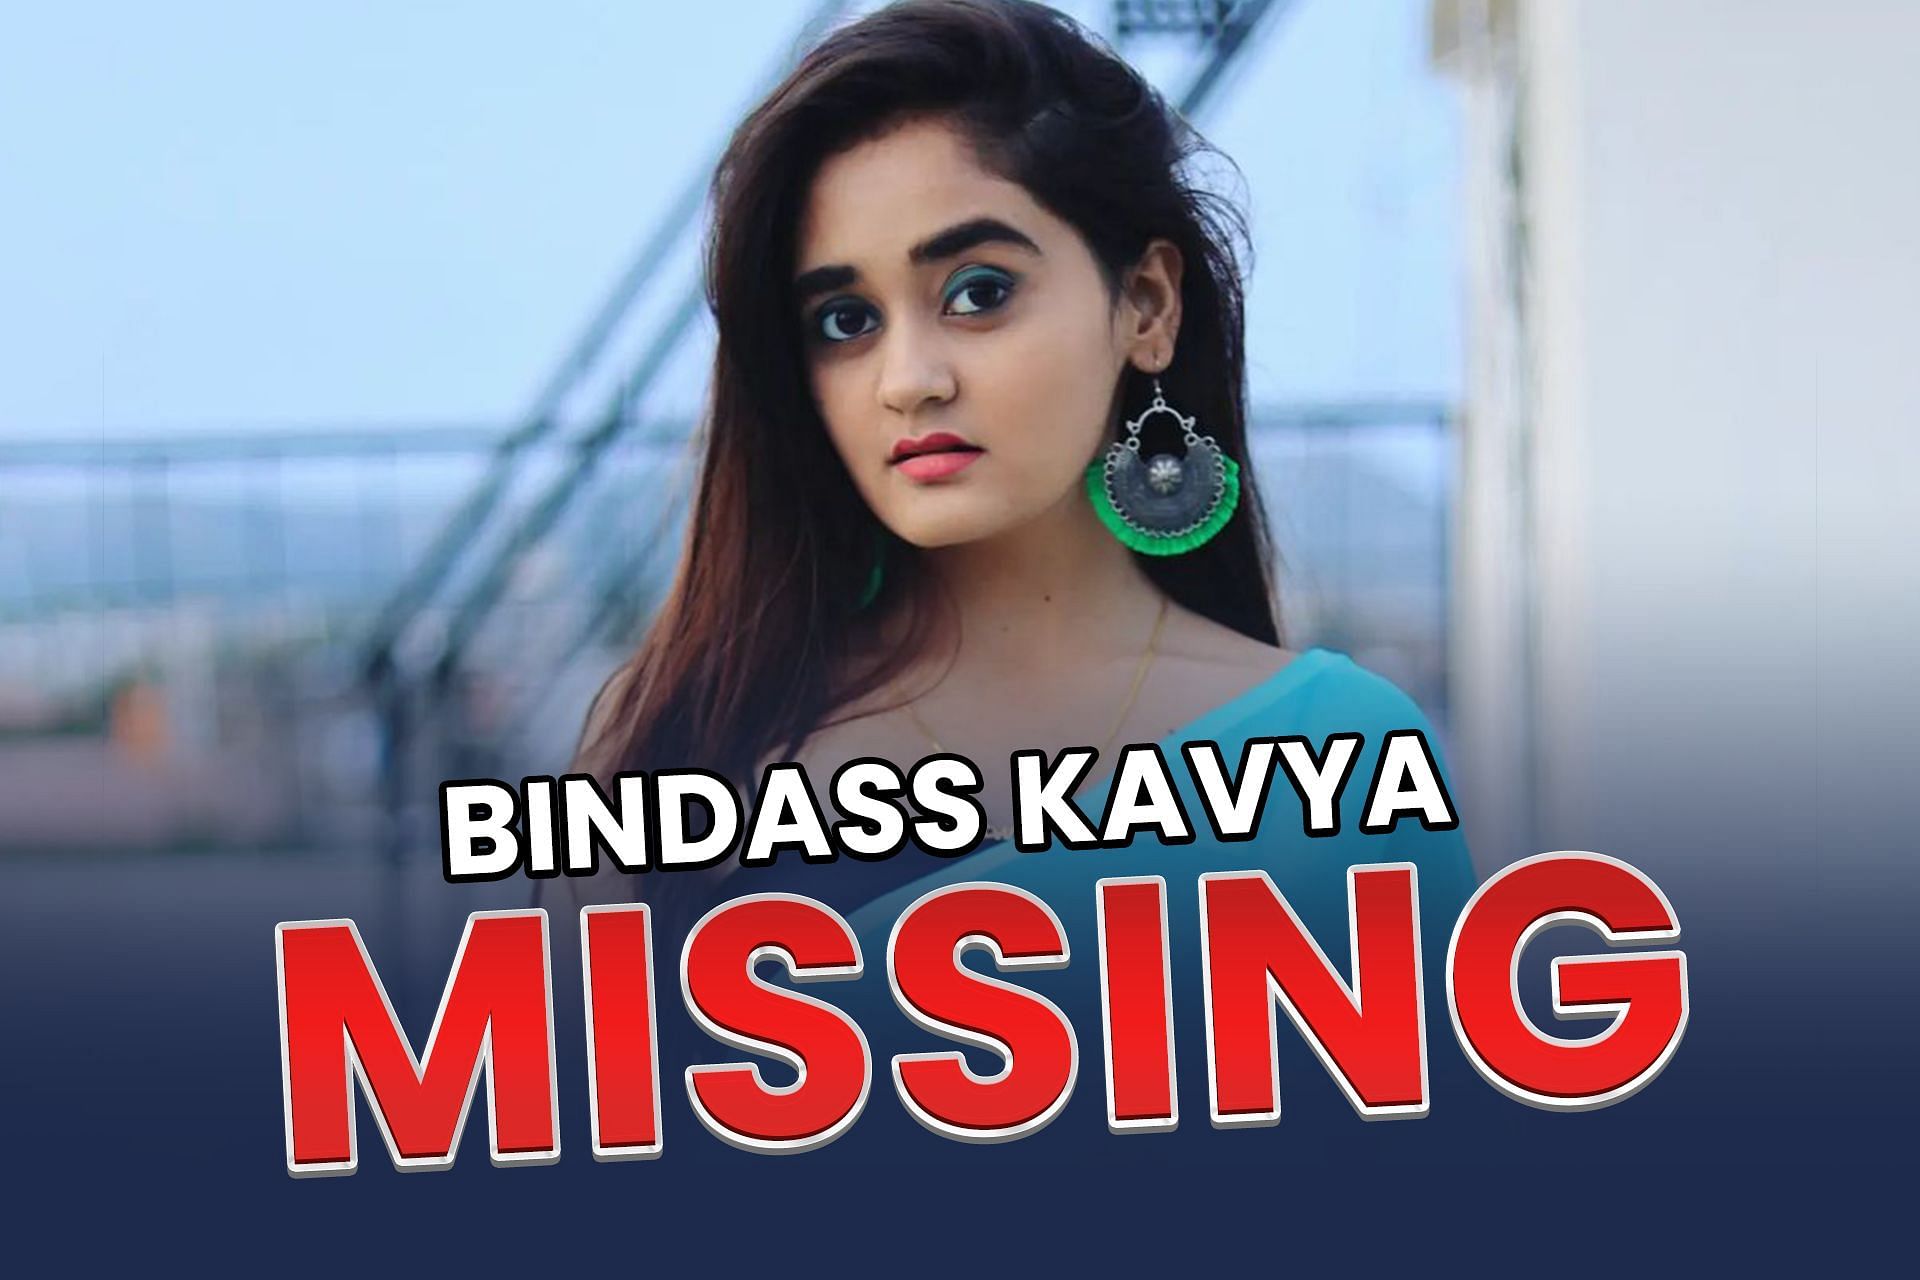 BGMI YouTuber, Bindass Kavya, is missing as told be her parents (Image via Sportskeeda)